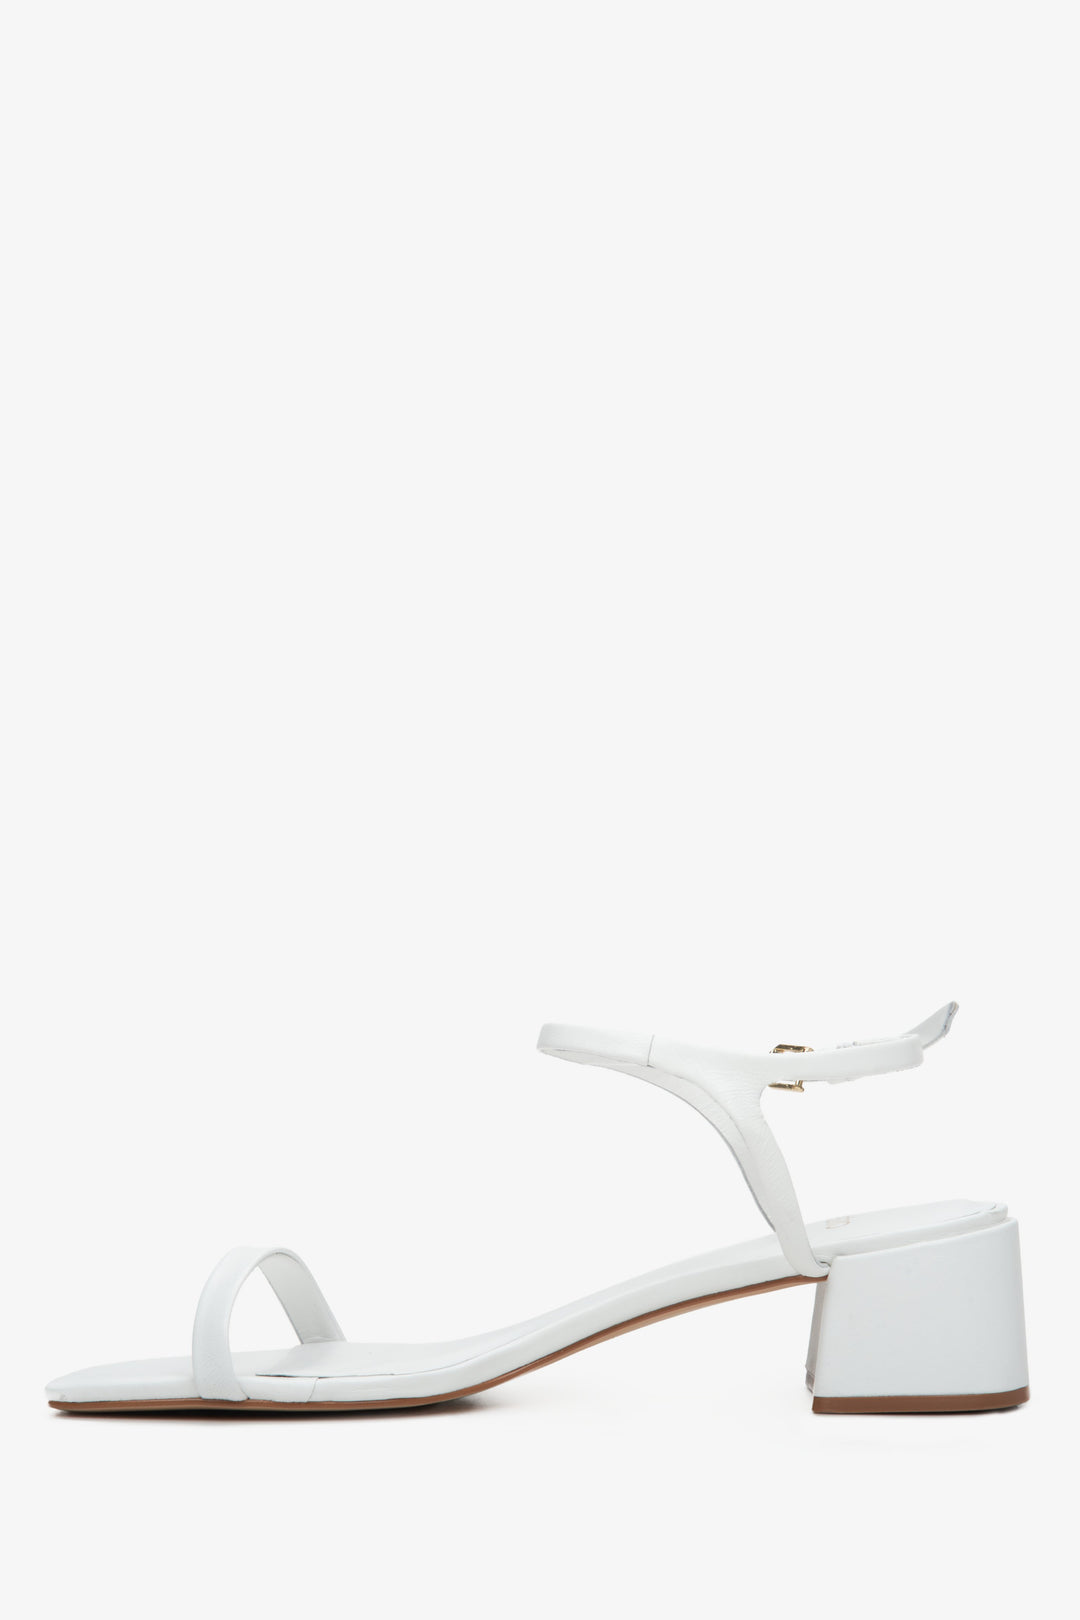 Wygodne sandały damskie na niskim obcasie ze skóry naturalnej w kolorze białym marki Estro - profil buta.